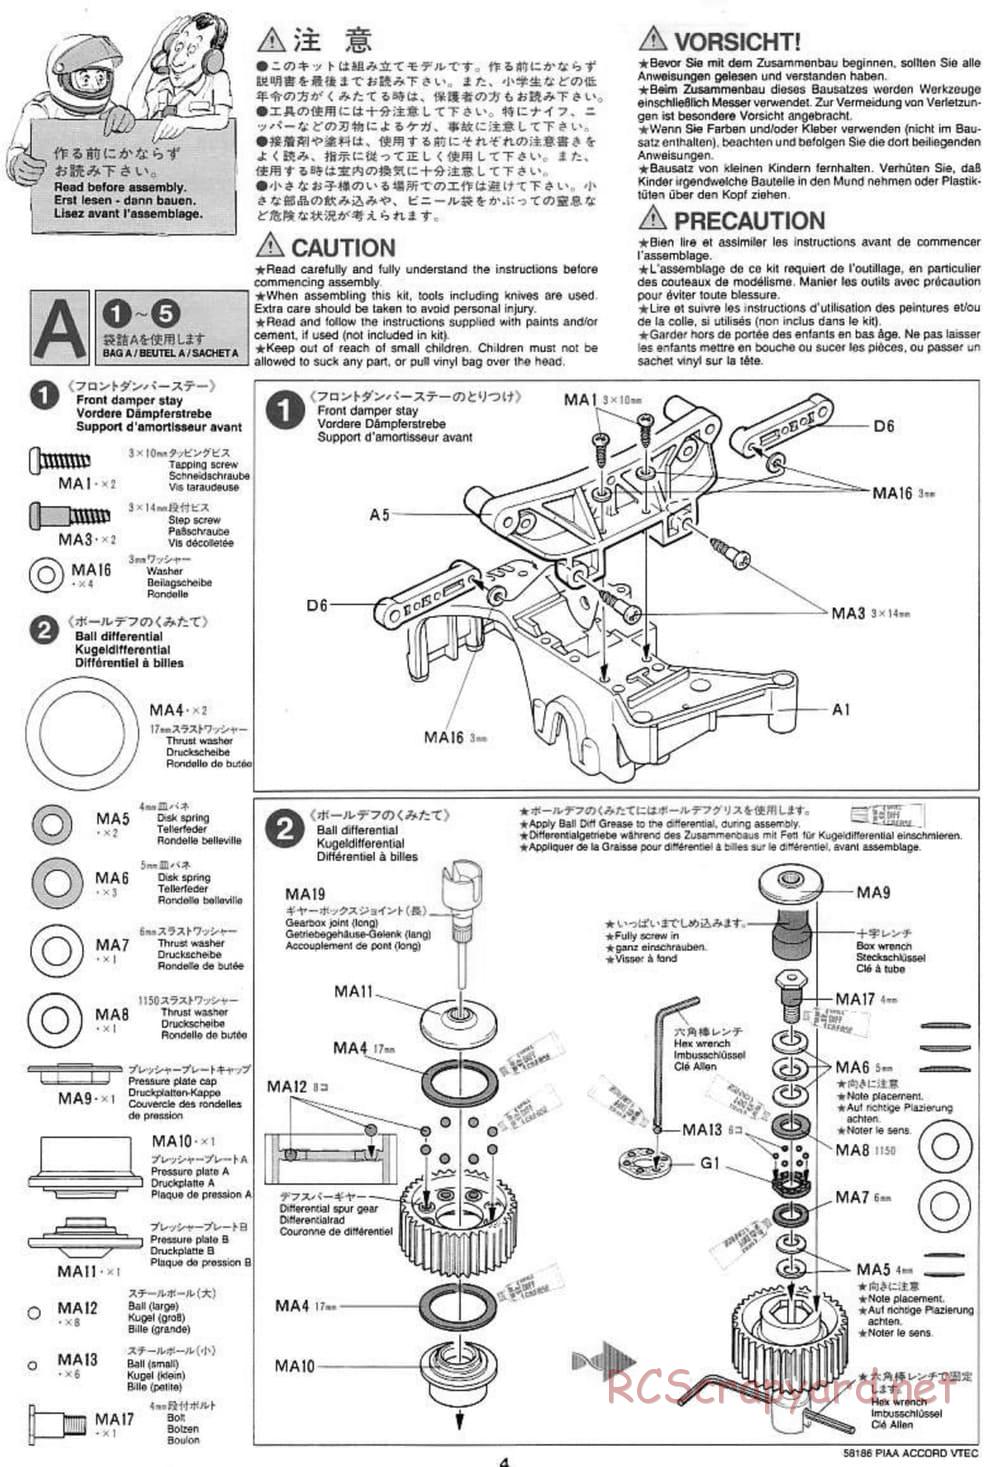 Tamiya - PIAA Accord VTEC - FF-01 Chassis - Manual - Page 4